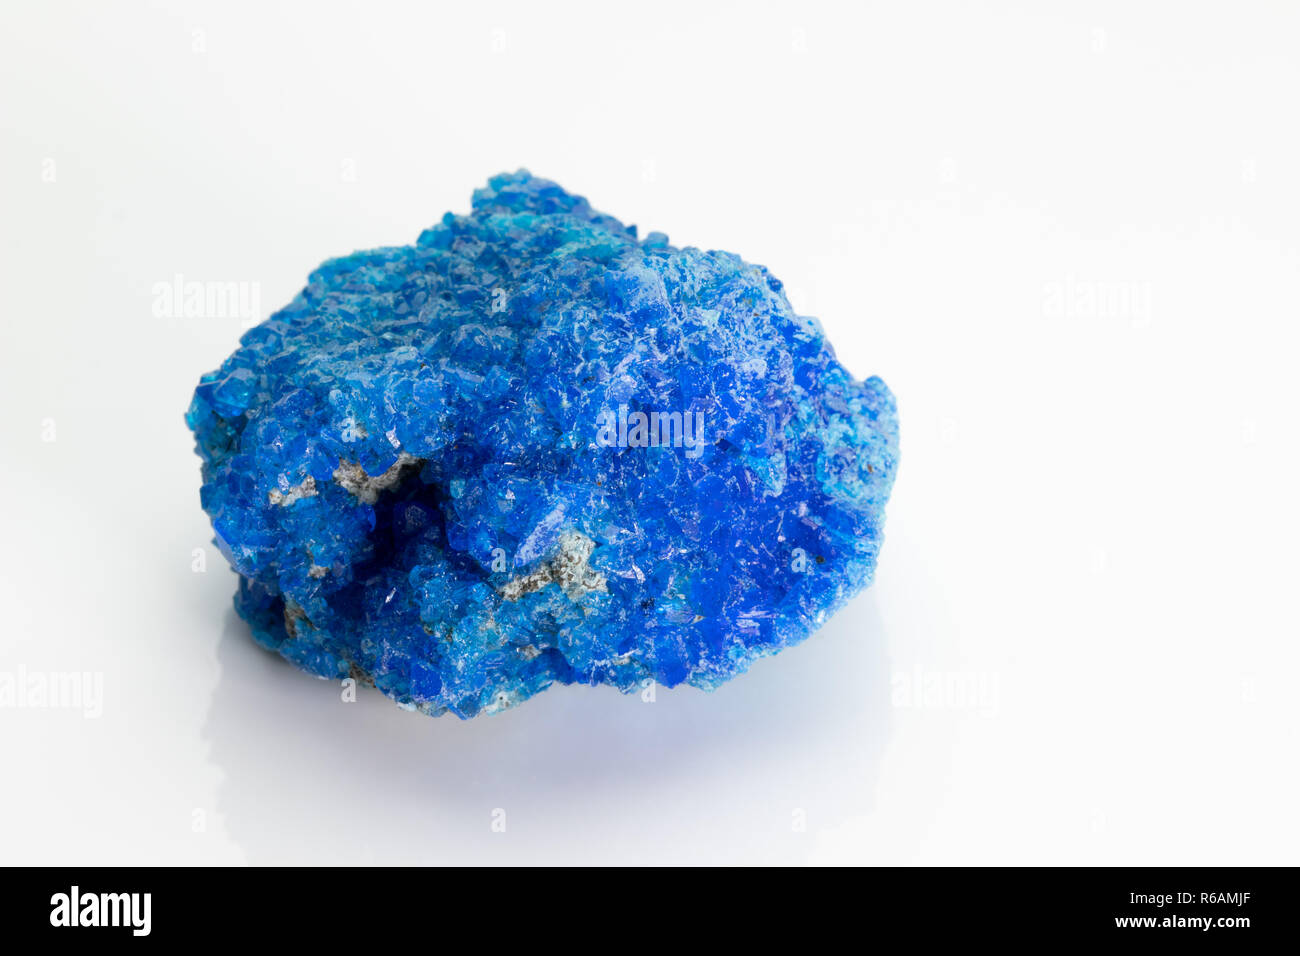 Covelita (covelline): azul raro mineral de sulfuro de cobre con la fórmula de CuS, procedentes del volcán Vesubio, aislado en un fondo blanco, Nápoles, Italia Foto de stock